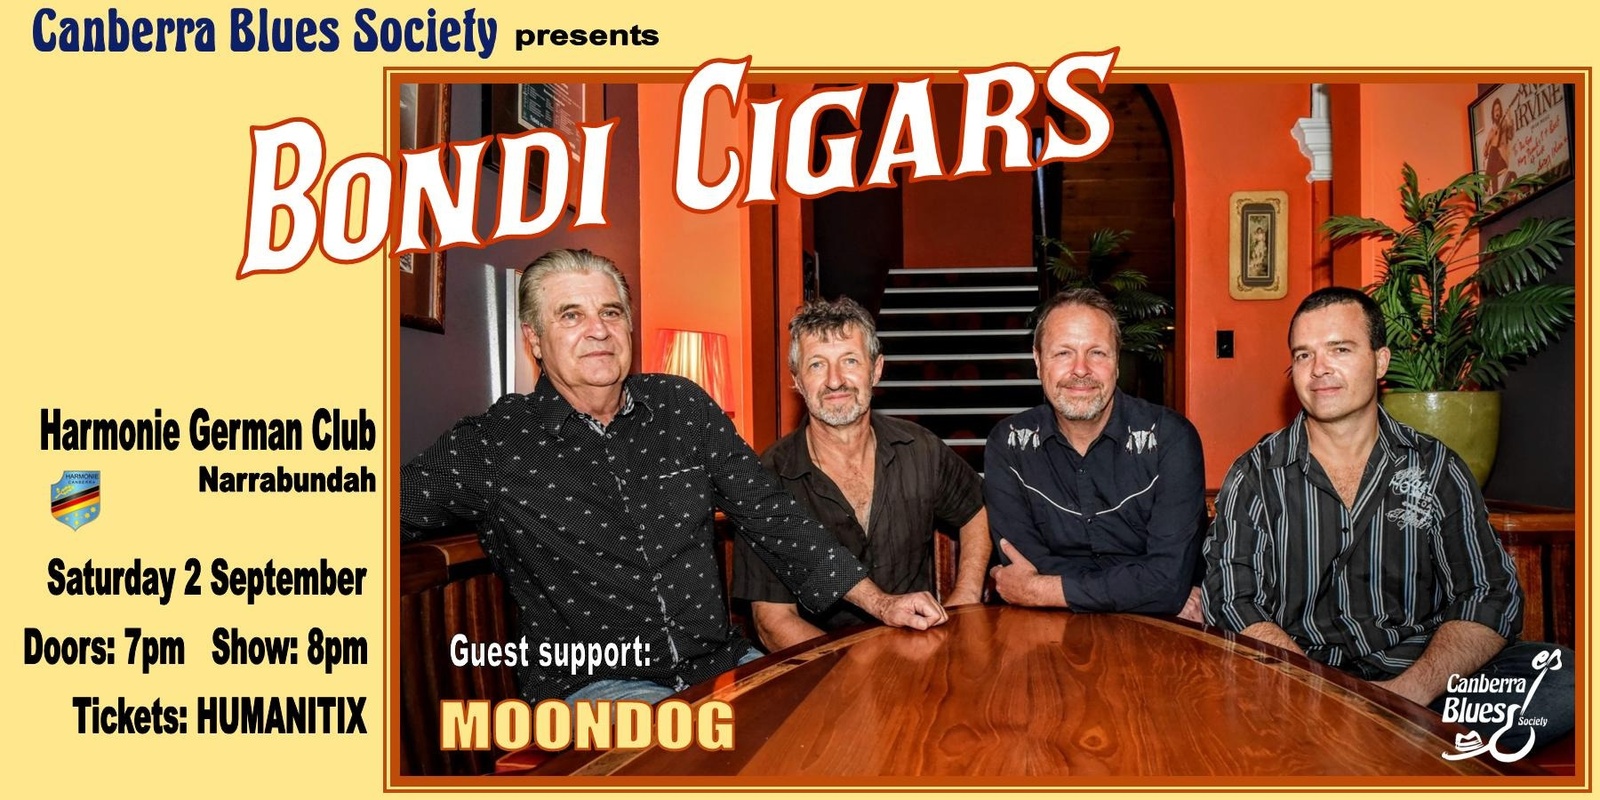 Banner image for Bondi Cigars @ The Zeppelin Room 